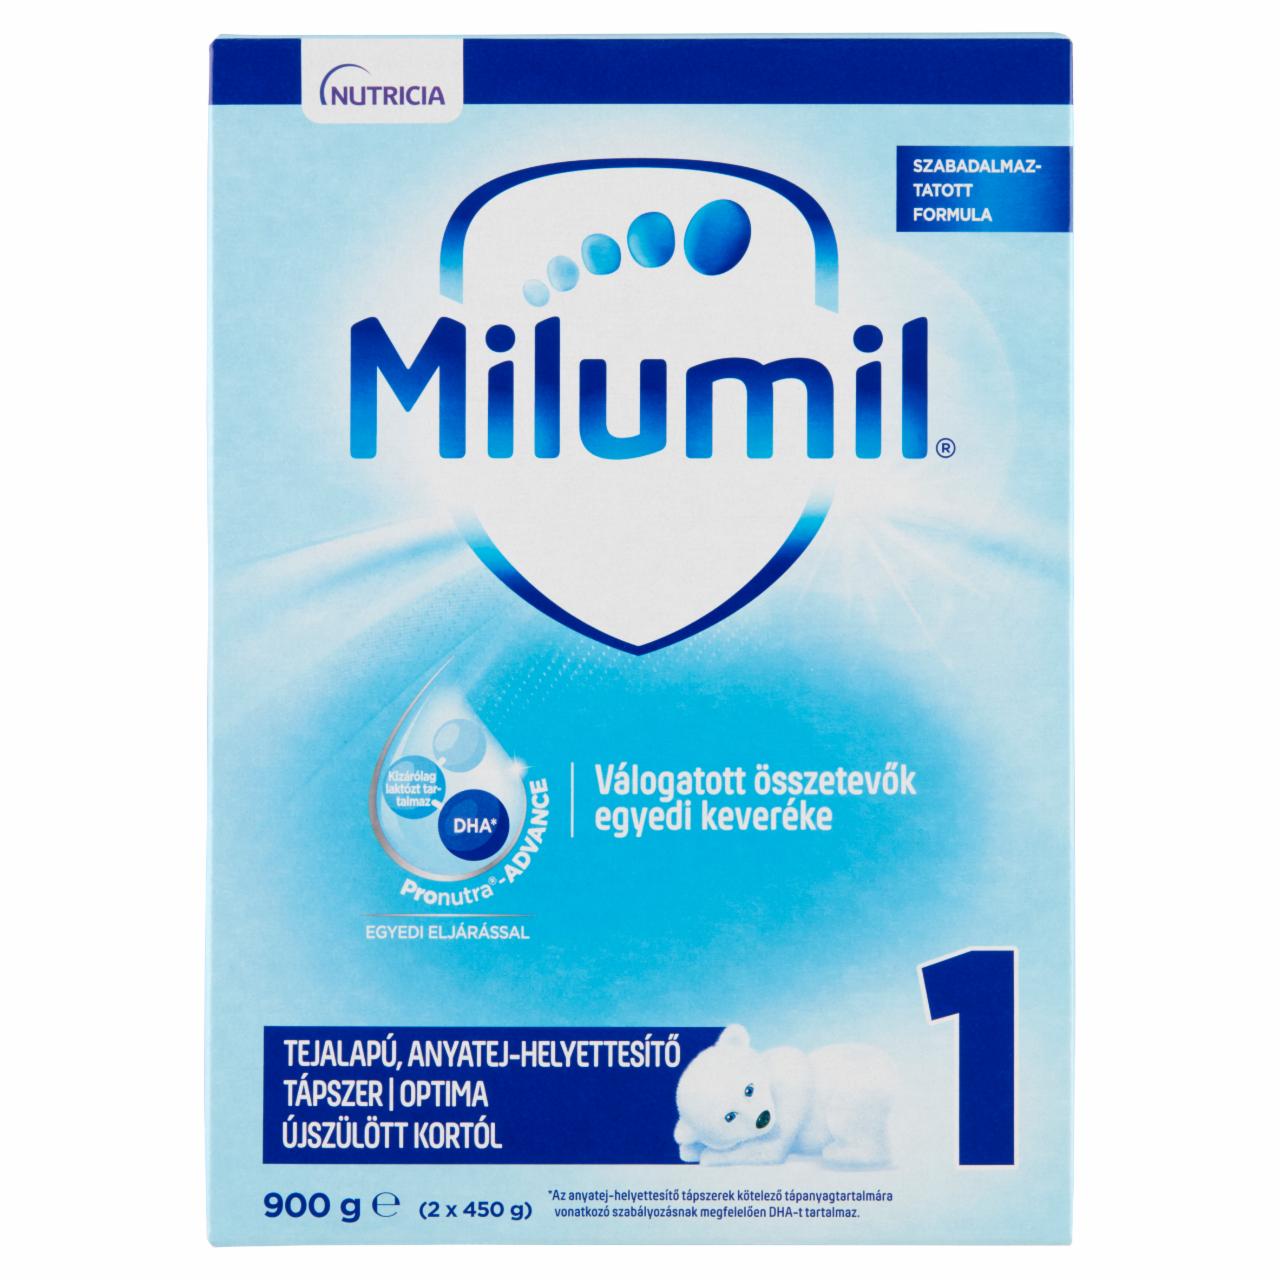 Képek - Milumil Nutri-Biotik 1 tejalapú anyatej-helyettesítő tápszer 0 hó+ 2 x 450 g (900 g)